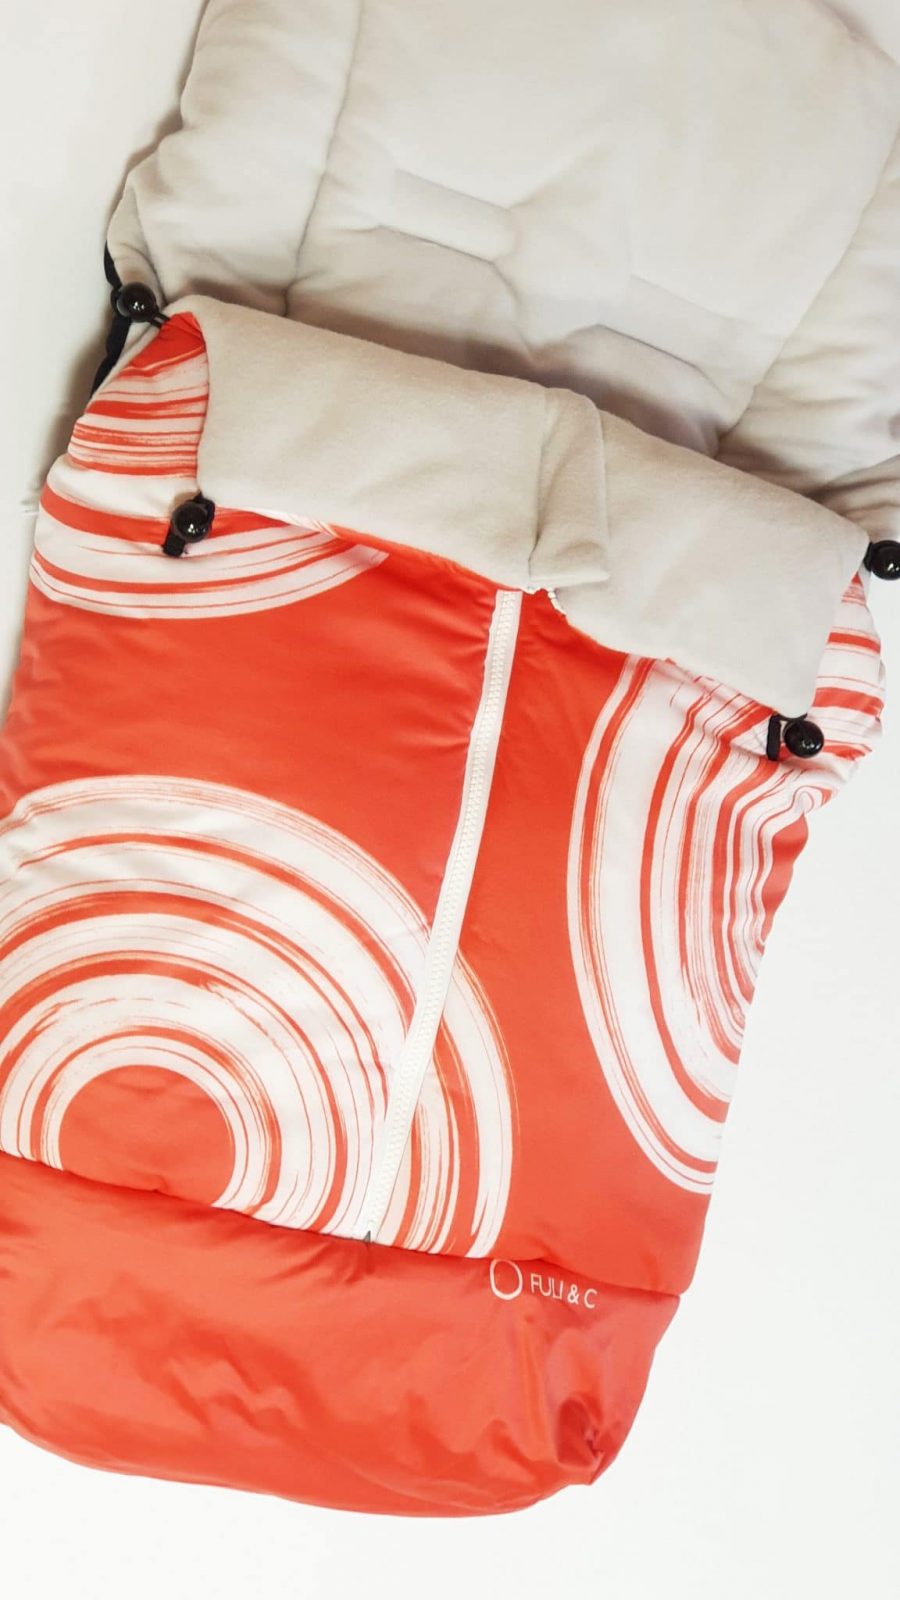 Saco silla universal fuli and c color naranja rojo con círculos blancos interior gris comprar oferta ver precio descuento rebajado